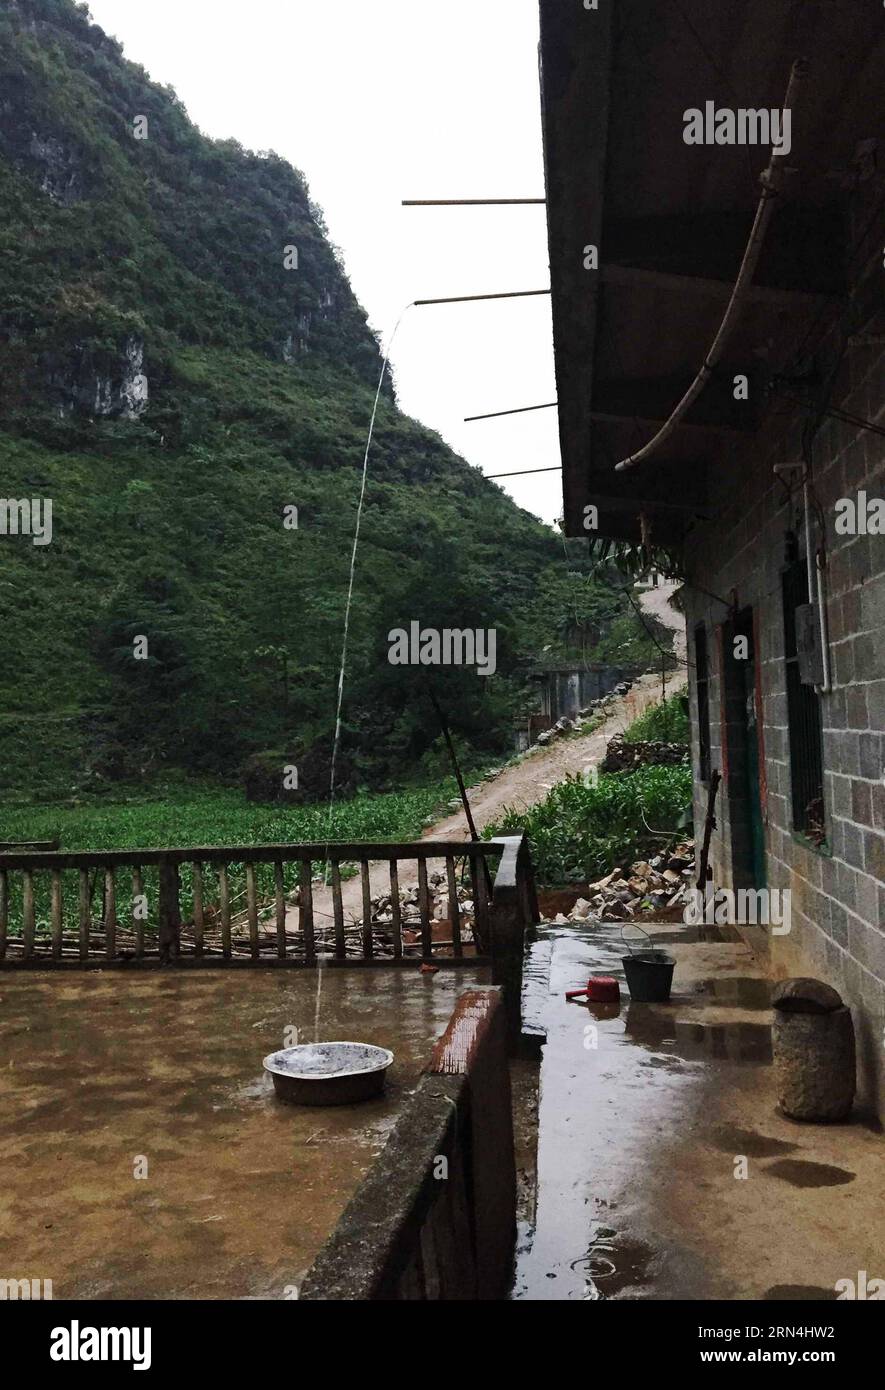 Regenwasser wird auf dem Dach eines Hauses im Dorf Nongyong der Gemeinde Bansheng im Autonomen Komitat Dahua Yao im Südwesten Chinas Guangxi Zhuang am 15. Mai 2015 gesammelt. Die Bansheng Township liegt im Zentrum der Karst-Landformen im Westen von Guangxi und leidet seit Ewigkeiten unter einem starken Wassermangel. Die Niederschläge sind daher ein Segen für die Menschen, die seit etwa 1.000 Jahren auf diesem Land leben und hauptsächlich der ethnischen Gruppe der Yao angehören. Um ihren täglichen Lebensbedürfnissen gerecht zu werden, sammeln die Einheimischen immer Regenwasser mit Eimern und Fässern jeder Größe sowie mit Dächern ihrer Häuser. In der Vergangenheit Deca Stockfoto